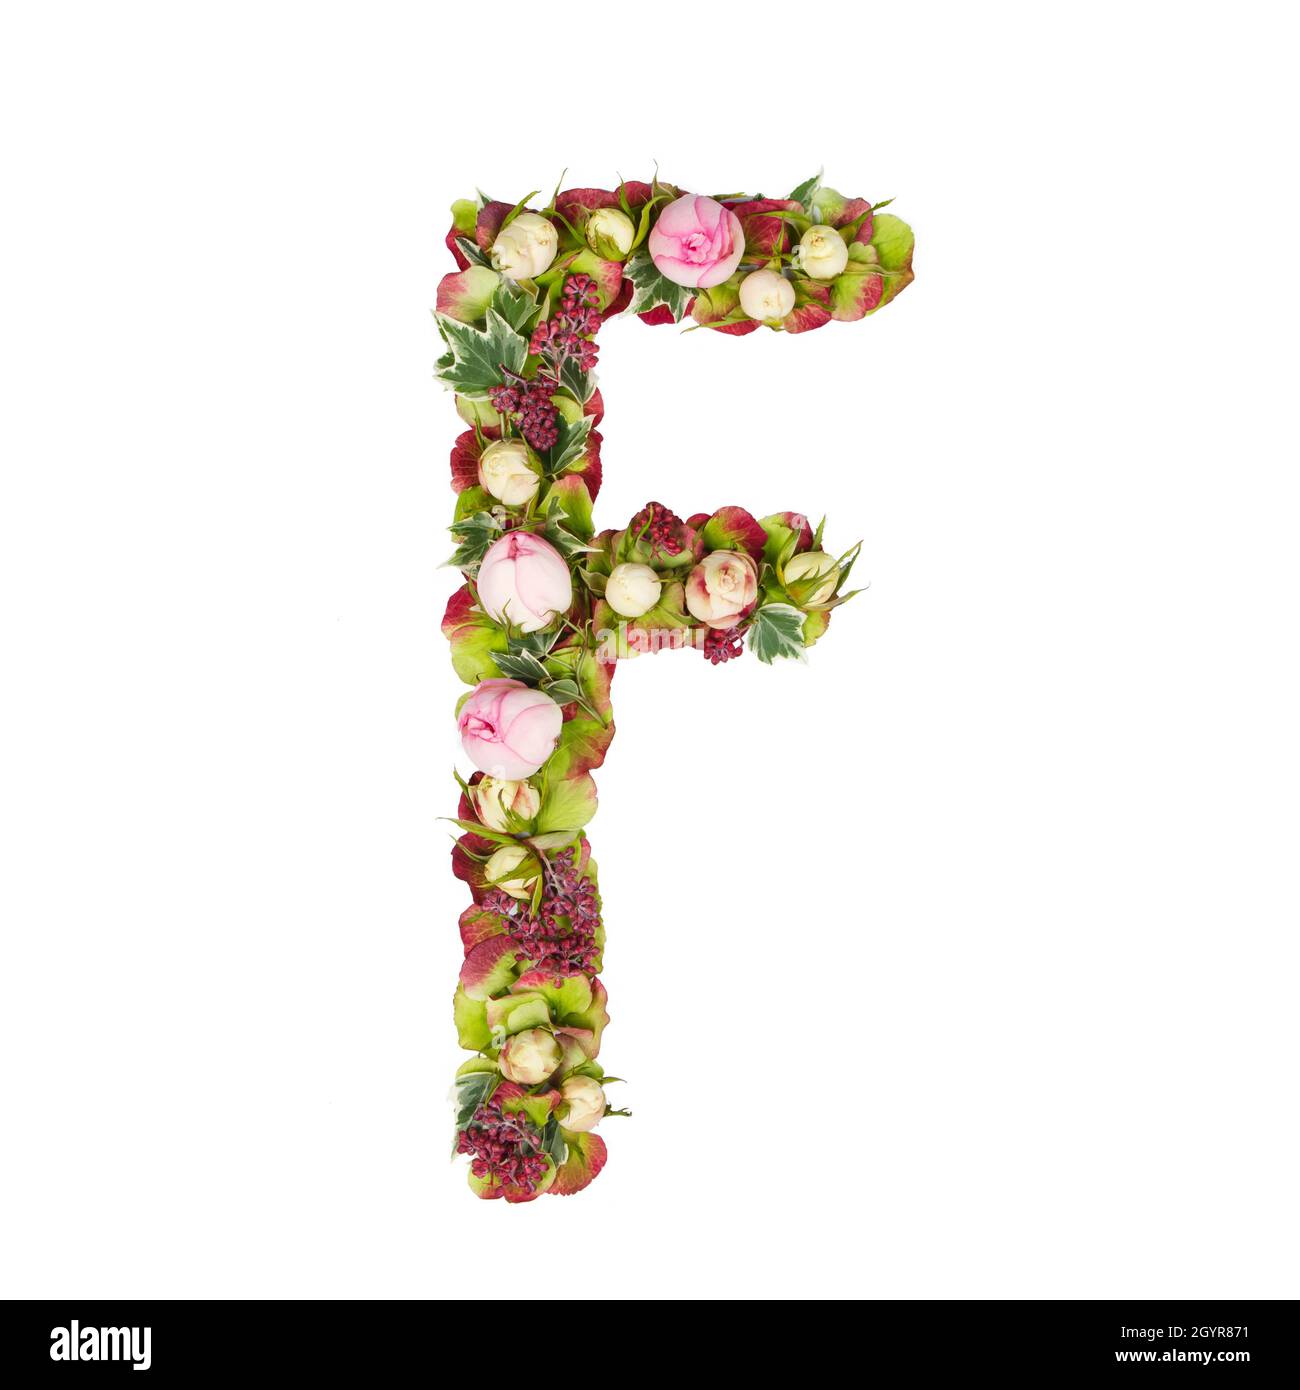 Großbuchstabe F Teil eines Satzes von Buchstaben, Zahlen und Symbolen des Alphabets mit Blumen, Zweigen und Blättern auf weißem Hintergrund Stockfoto